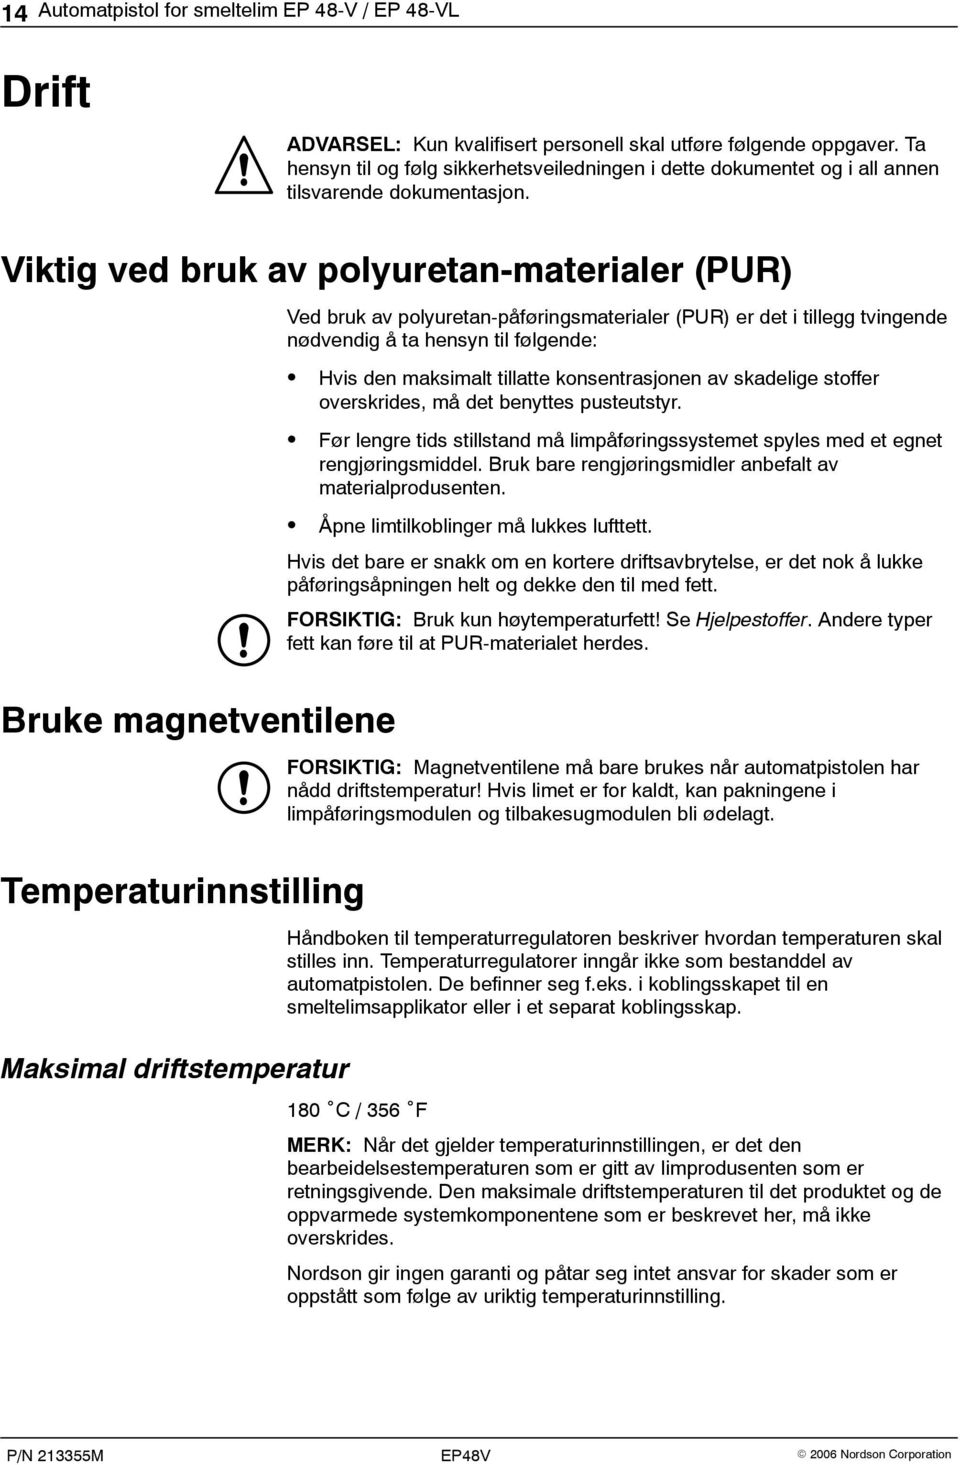 Viktig ved bruk av polyuretan-materialer (PUR) Bruke magnetventilene Temperaturinnstilling Maksimal driftstemperatur Ved bruk av polyuretan-påføringsmaterialer (PUR) er det i tillegg tvingende